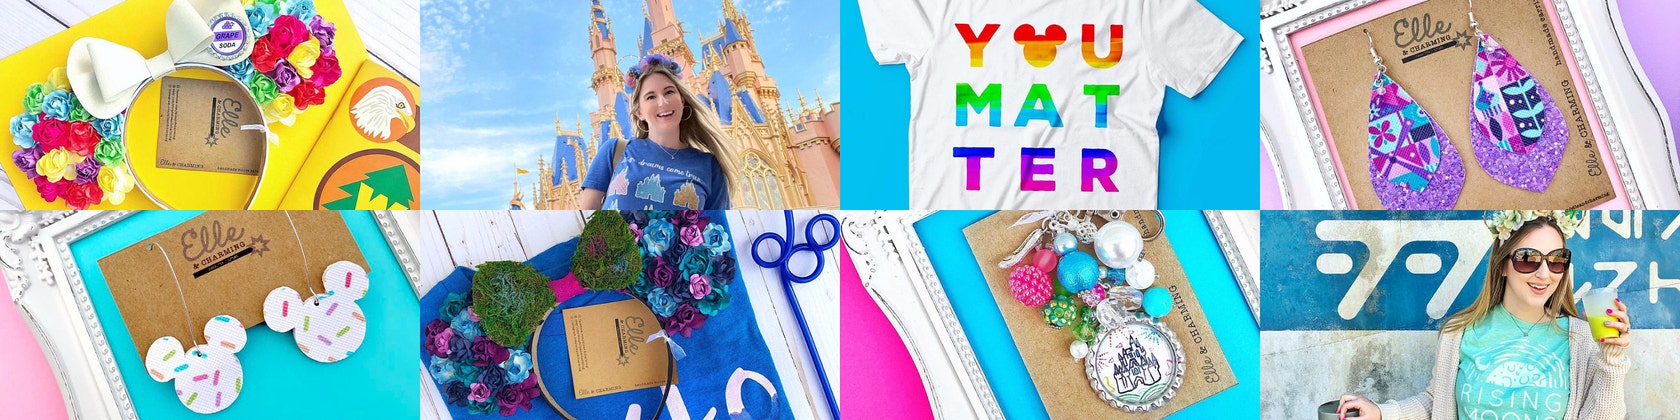 Pull Plaid pour Femme Disney Stitch -Taille unique (Via coupon